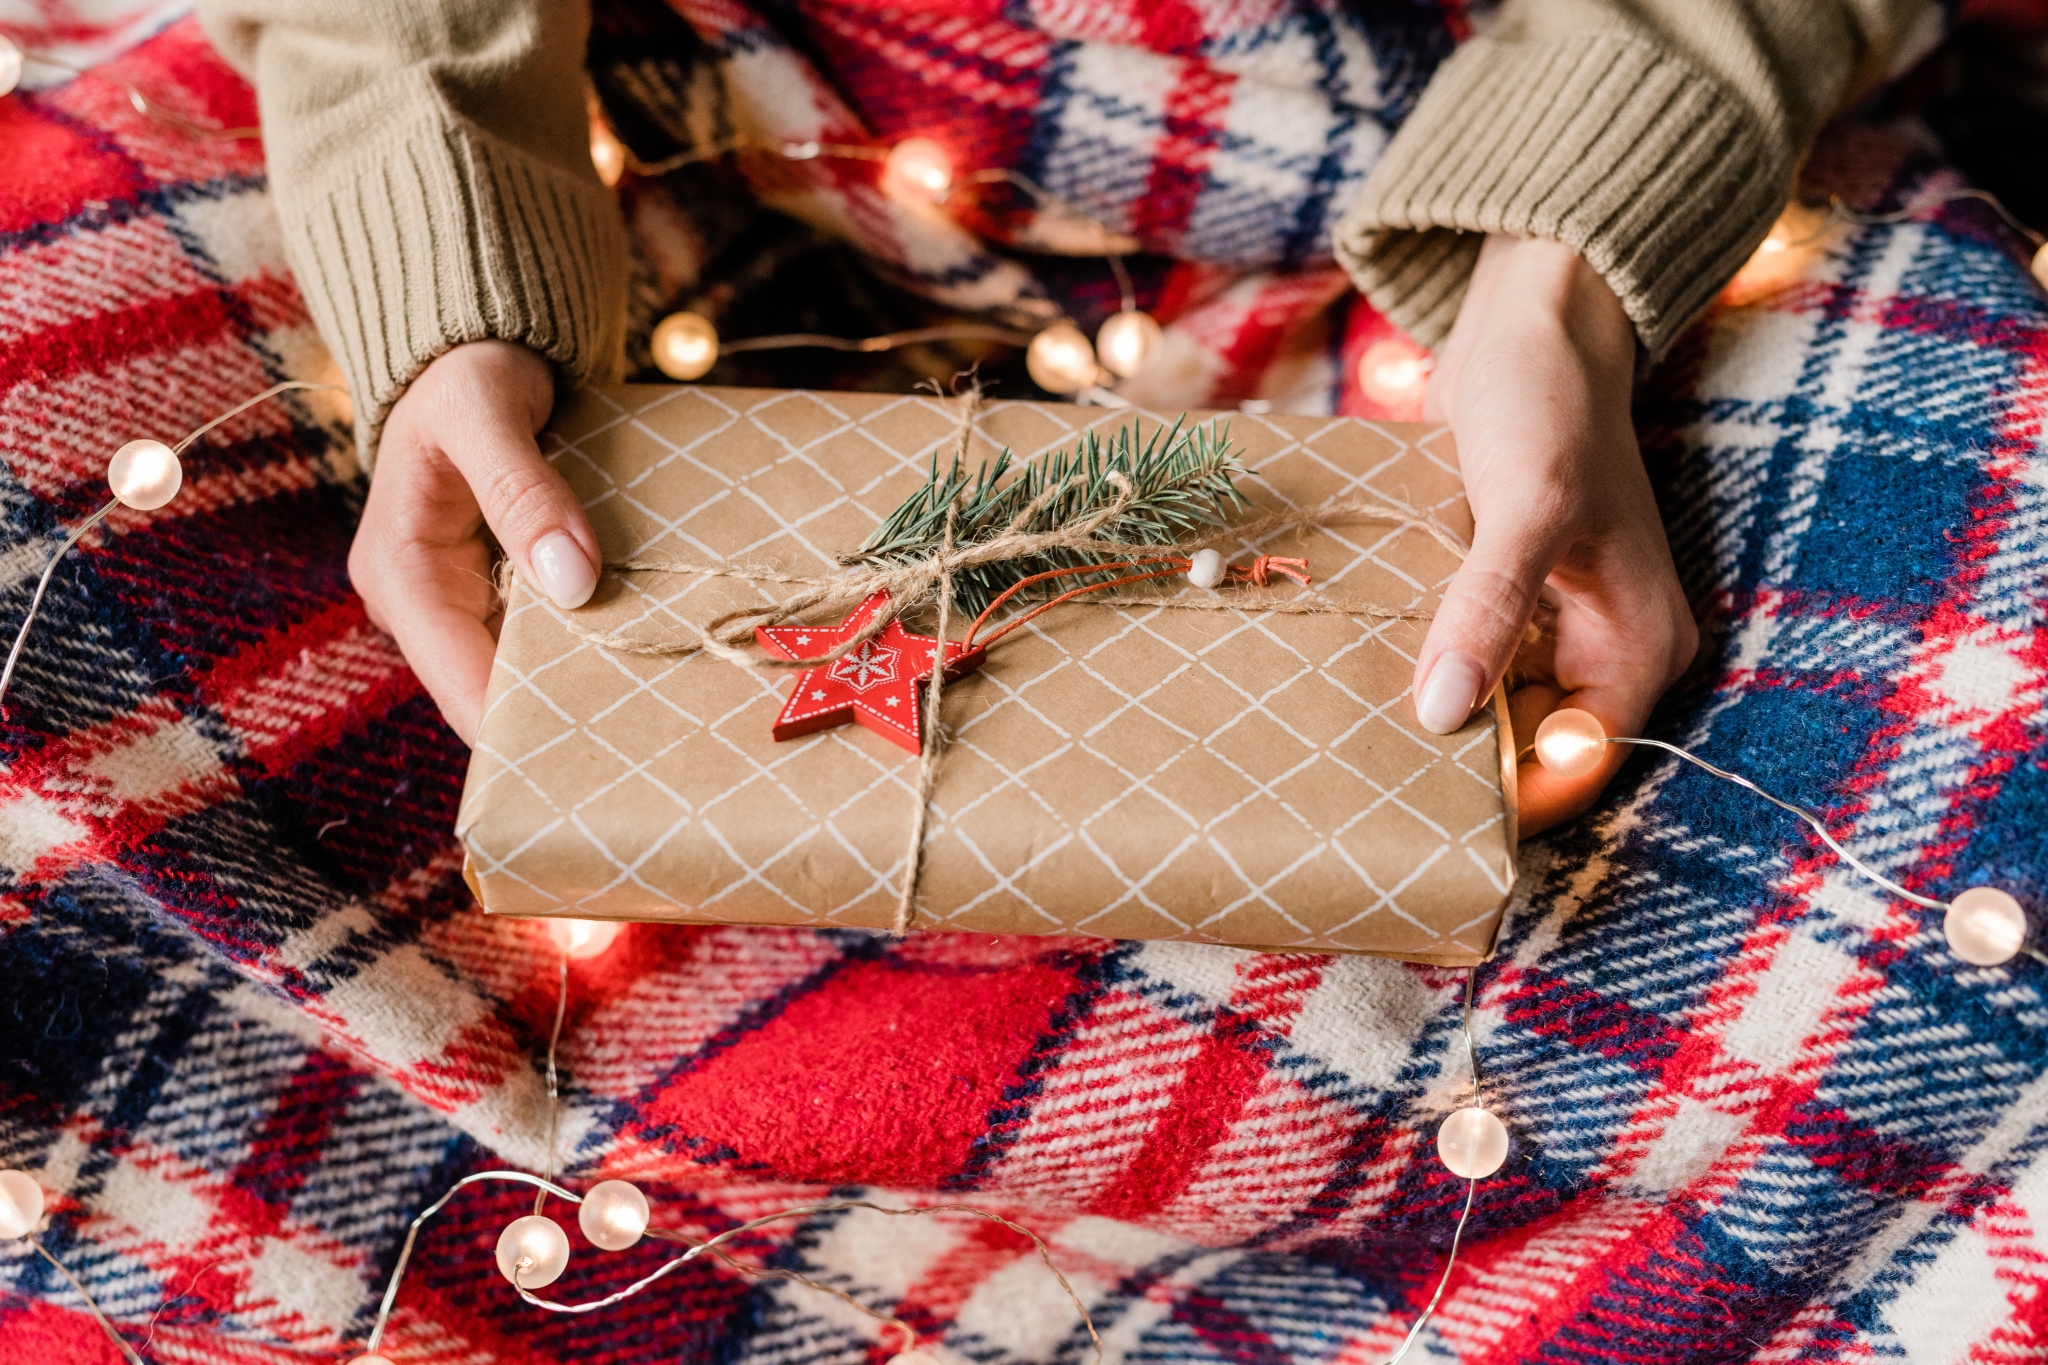 5 Reasons Kilts Make a Great Christmas Gift